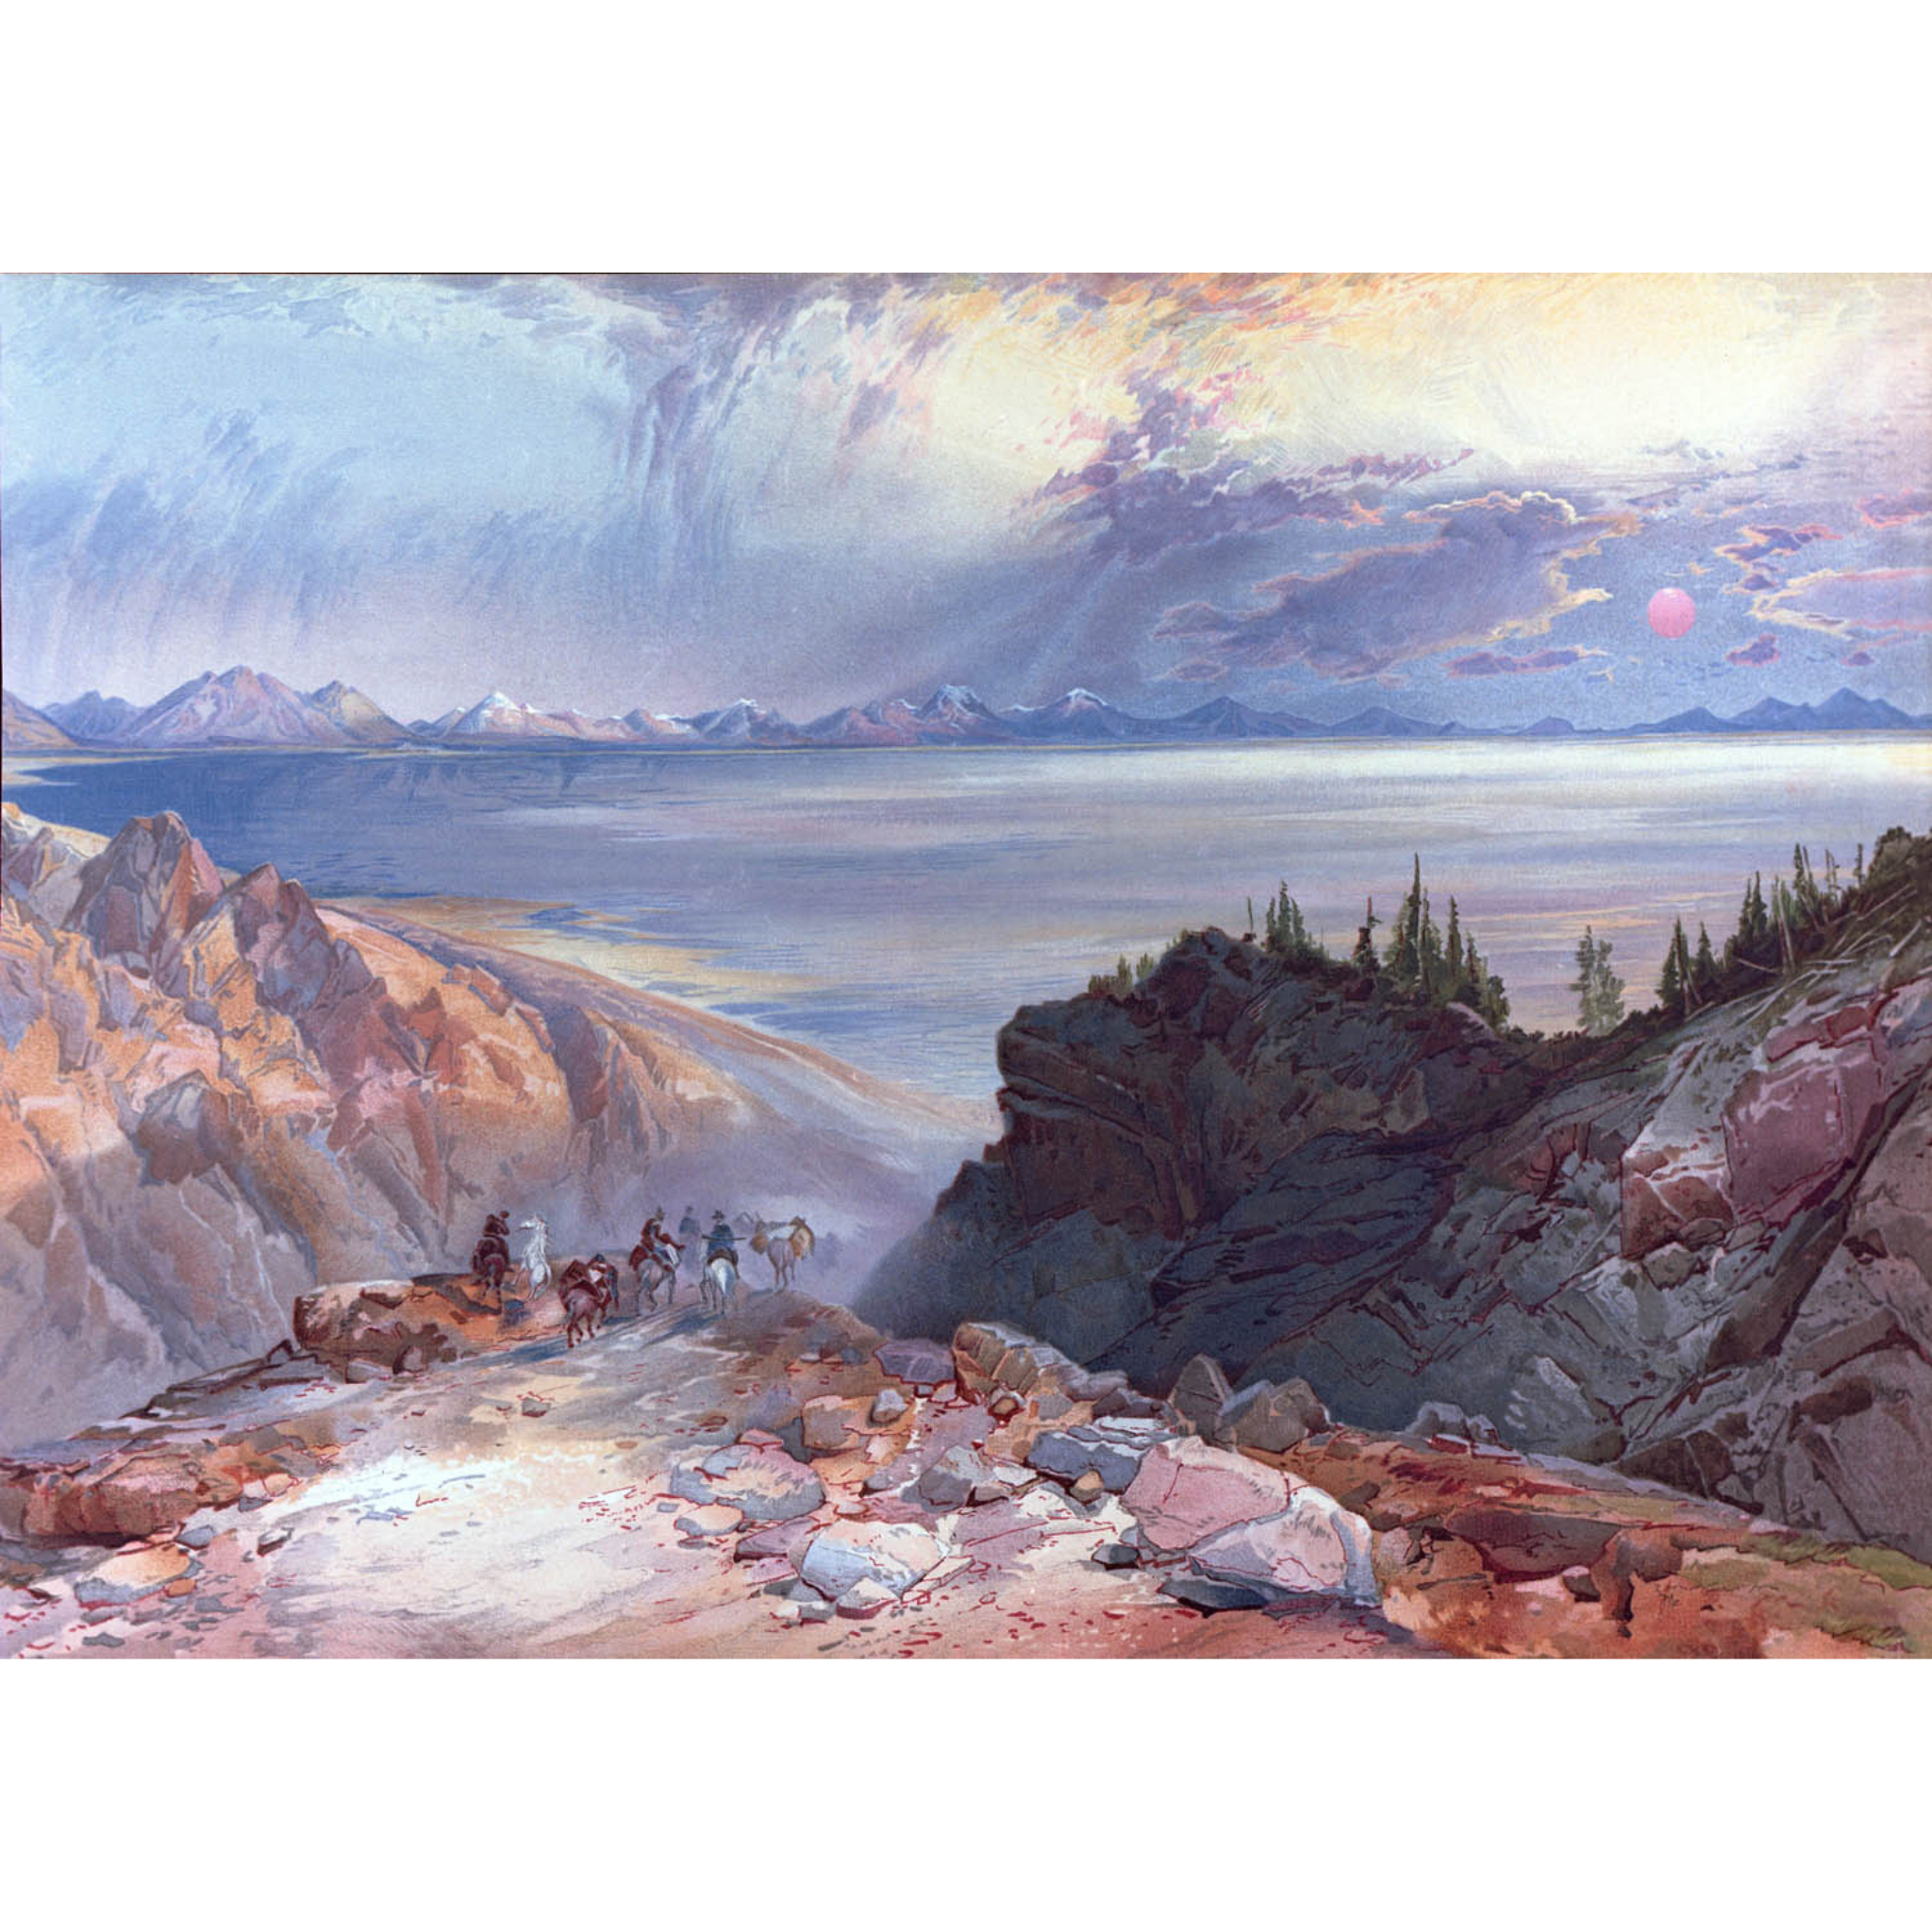 The Great Salt Lake of Utah - 1874-75 Thomas Moran Watercolor